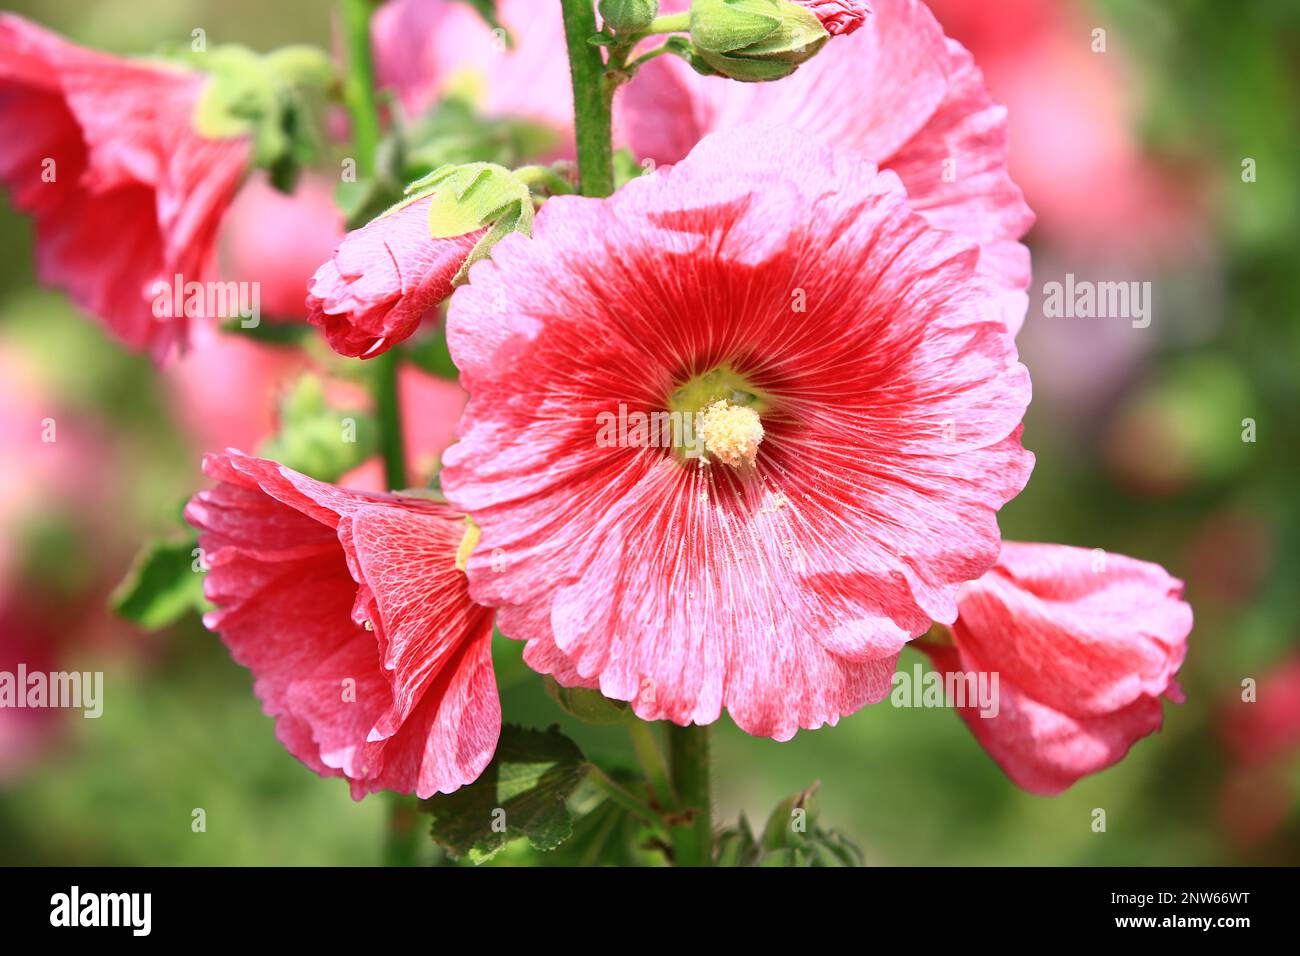 Fiori rossi di Hollyhock (Alcea rosea), primo piano dei fiori colorati di Hollyhock fiorire nel giardino Foto Stock